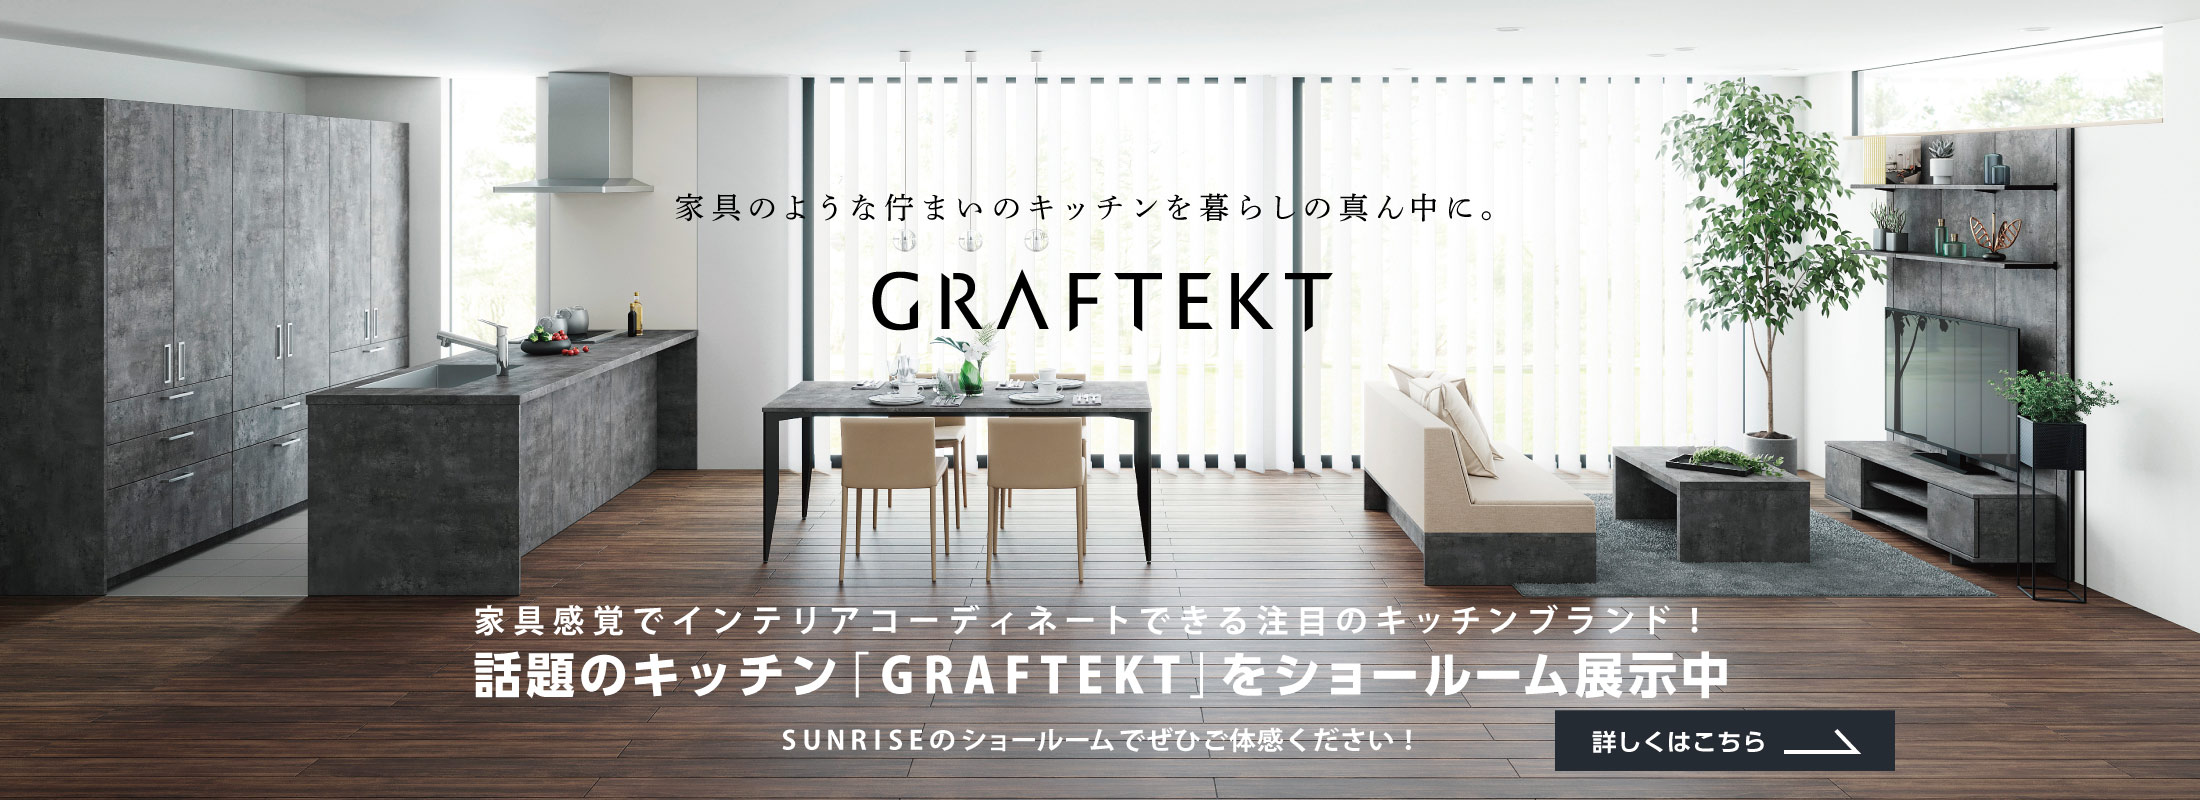 話題のキッチン「GRAFTEKT」をショールーム展示中